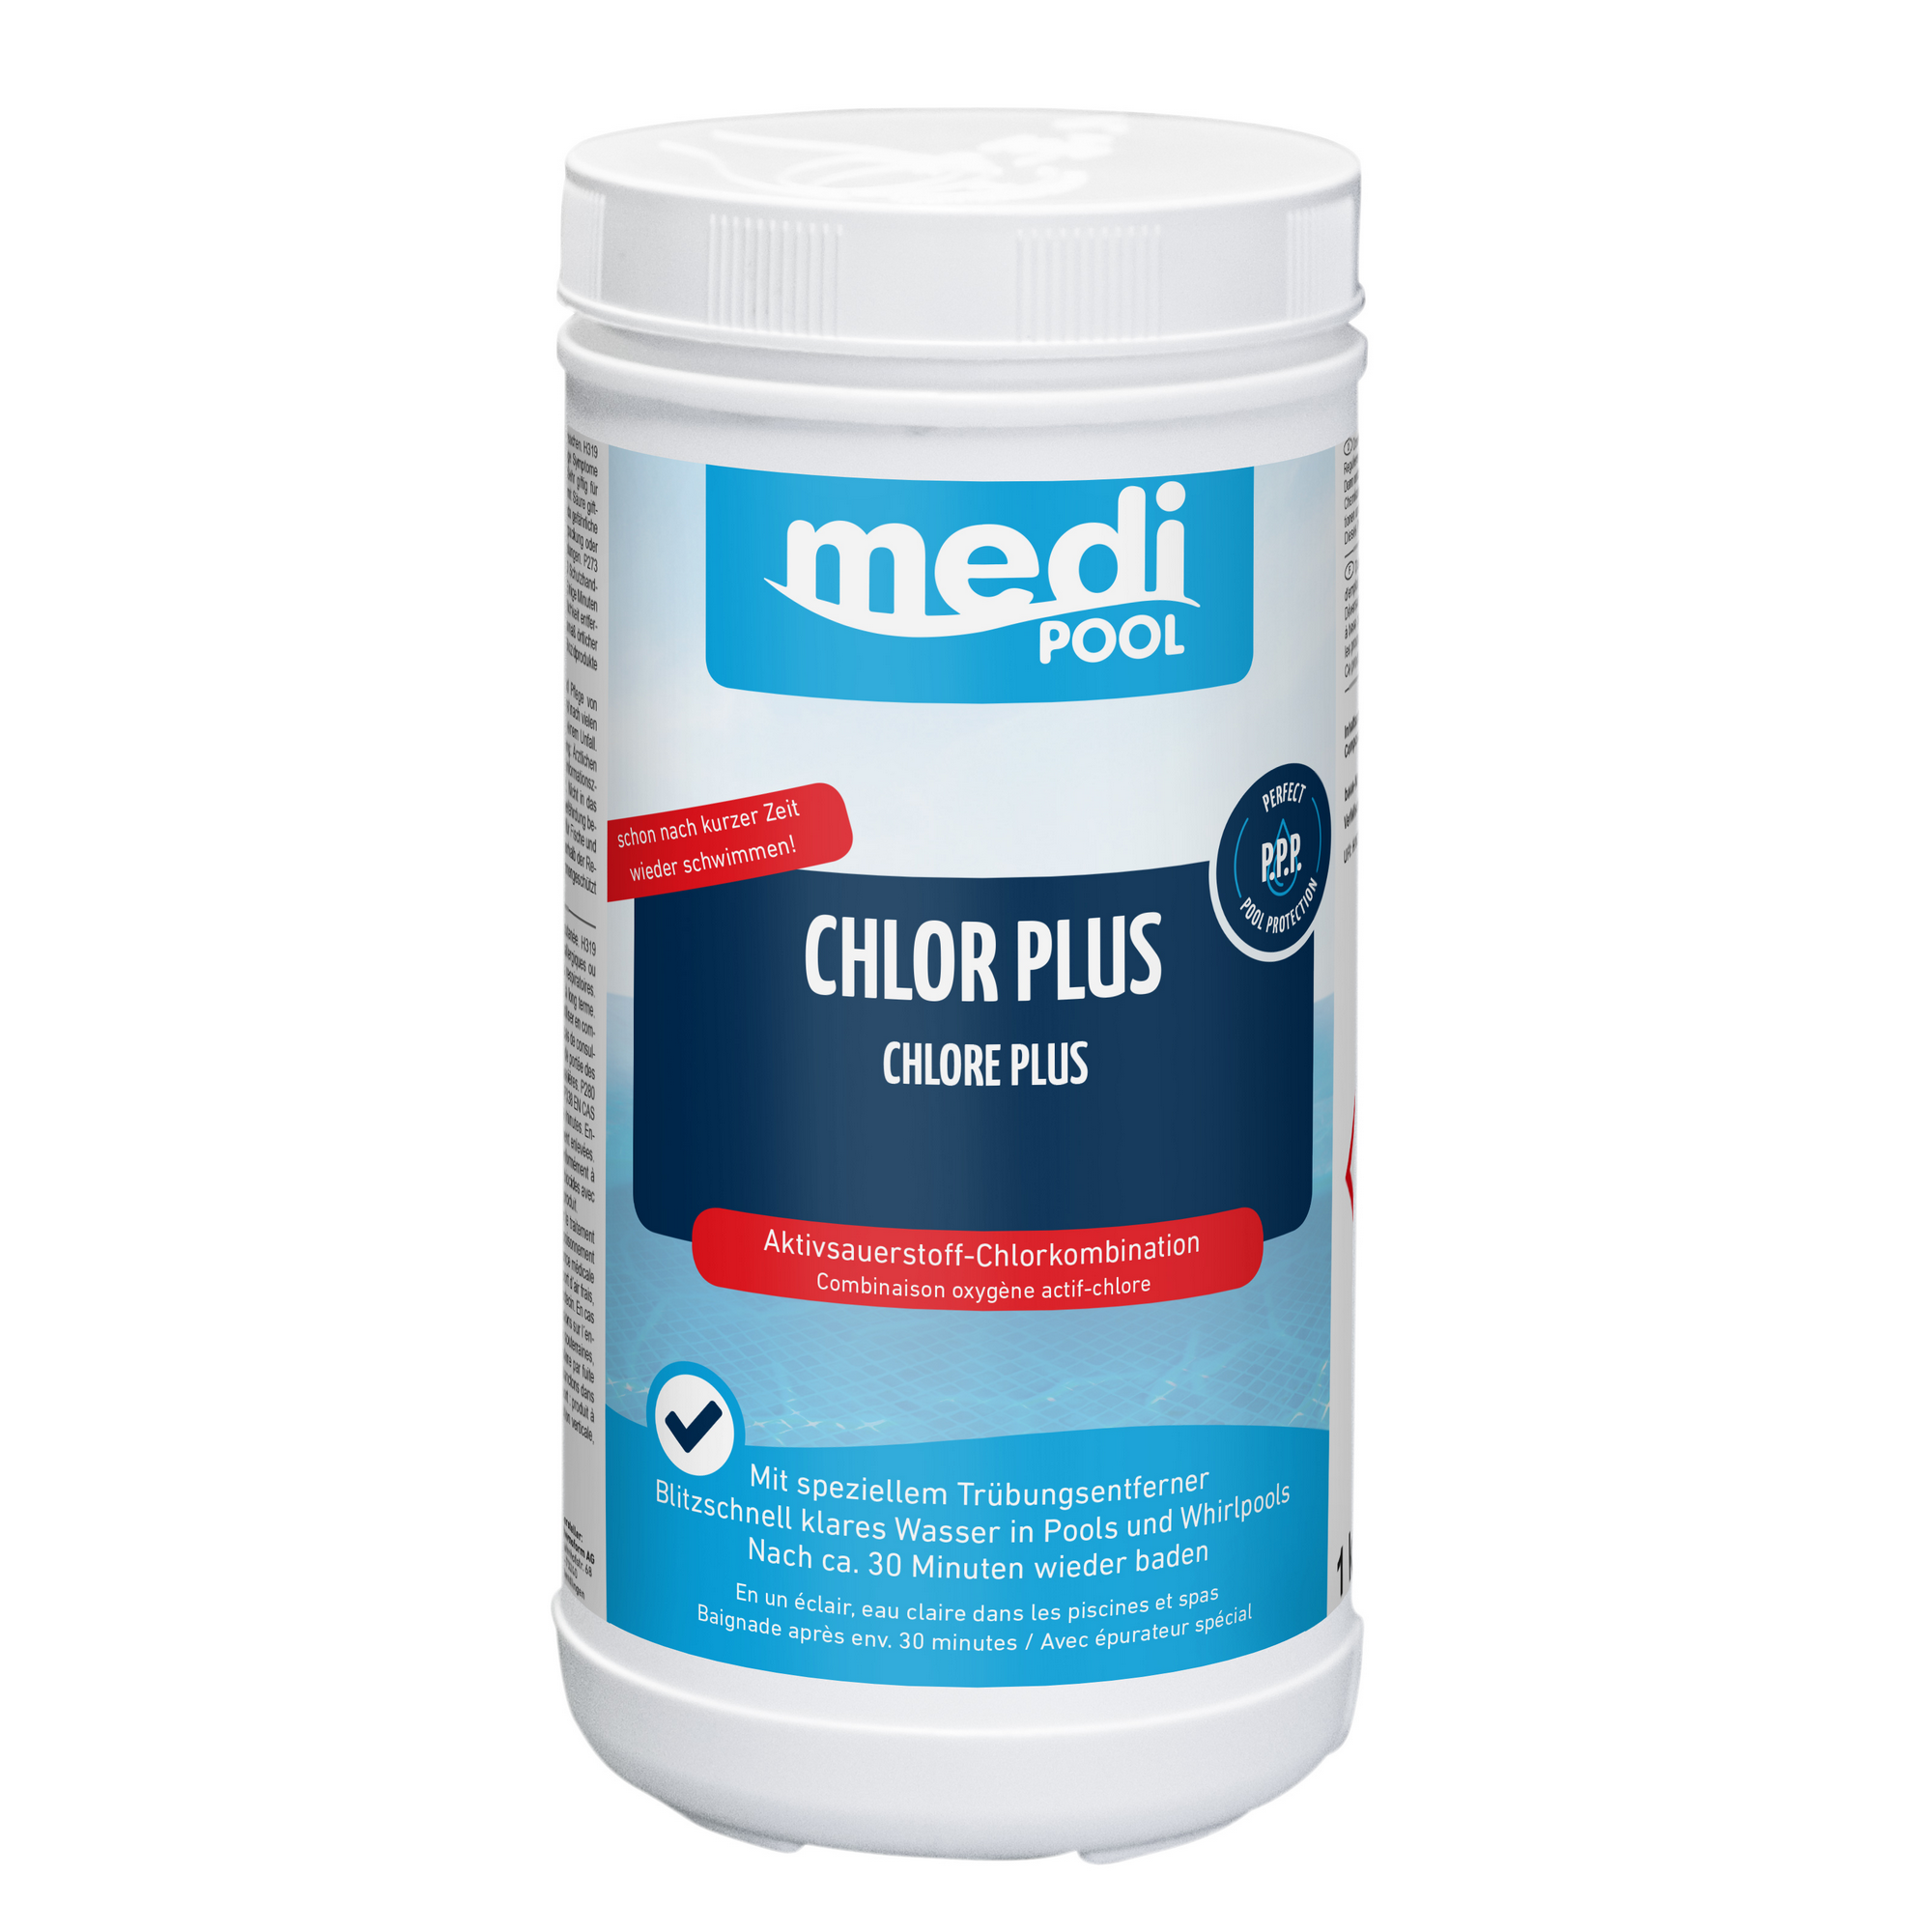 Chlor Plus 1 kg, mit speziellem Trübungsentferner + product picture